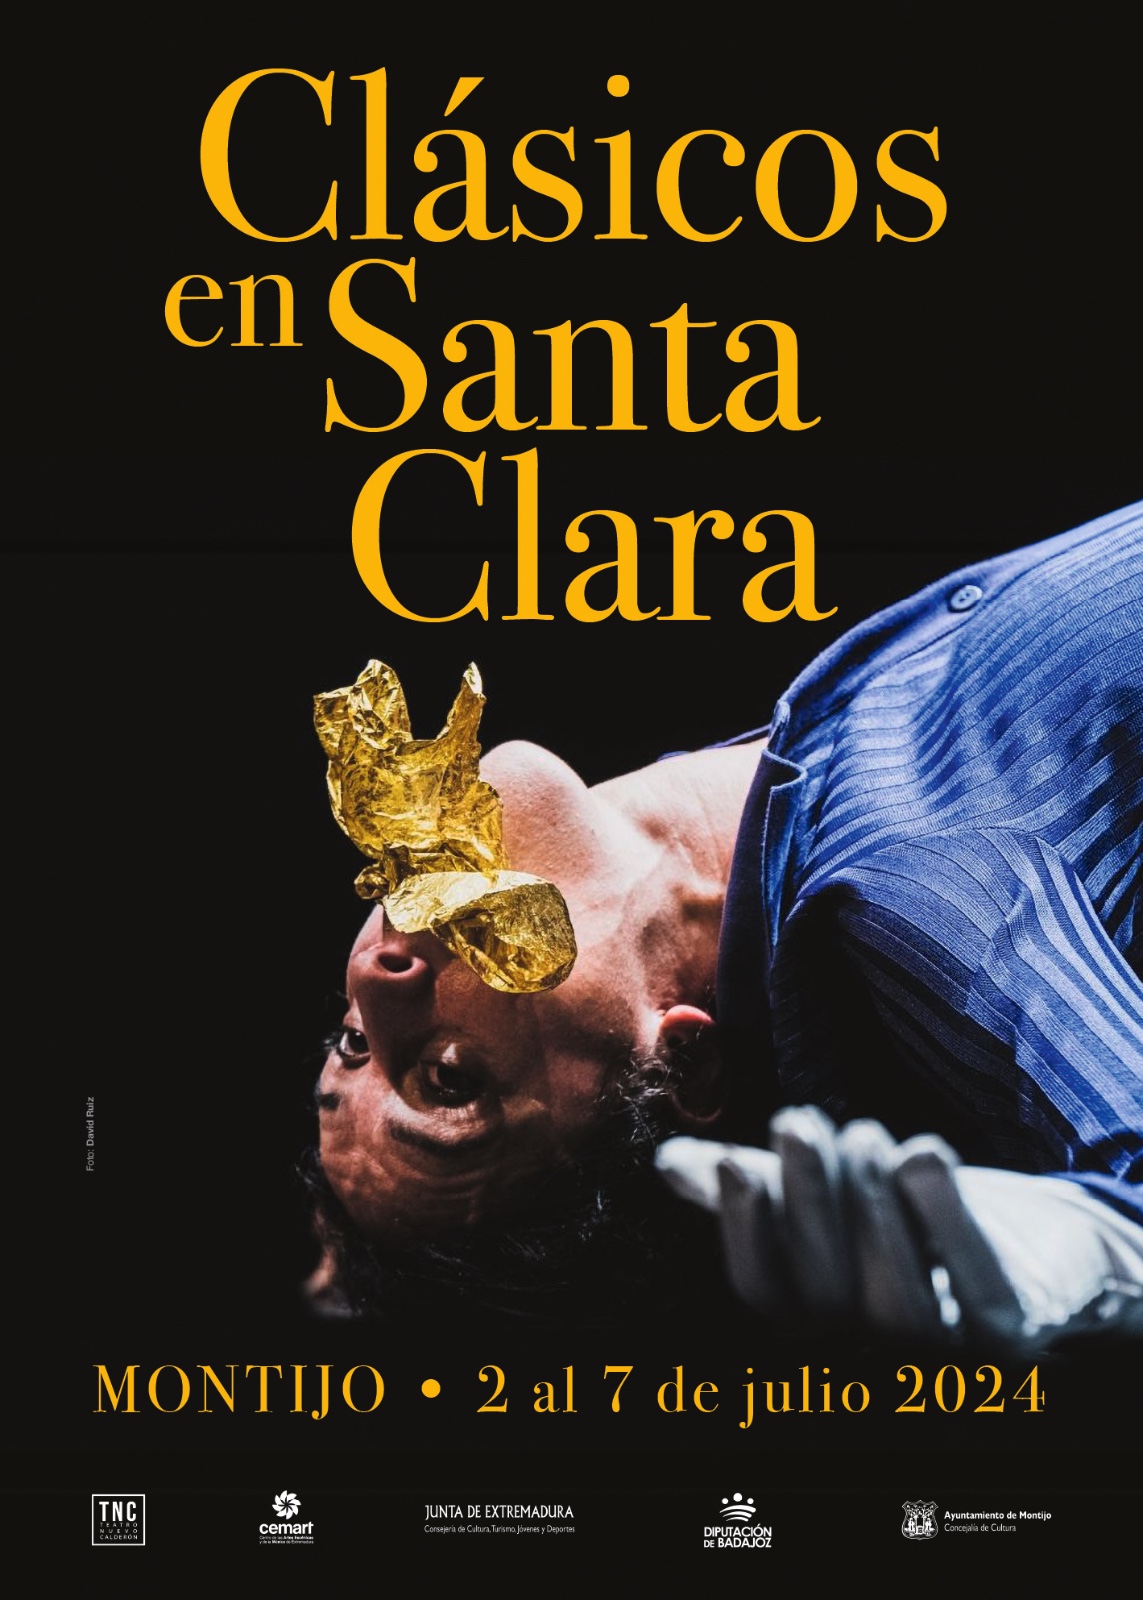 Image 3 of article Siete representaciones teatrales conforman el Festival 'Clásicos en Santa Clara' de Montijo